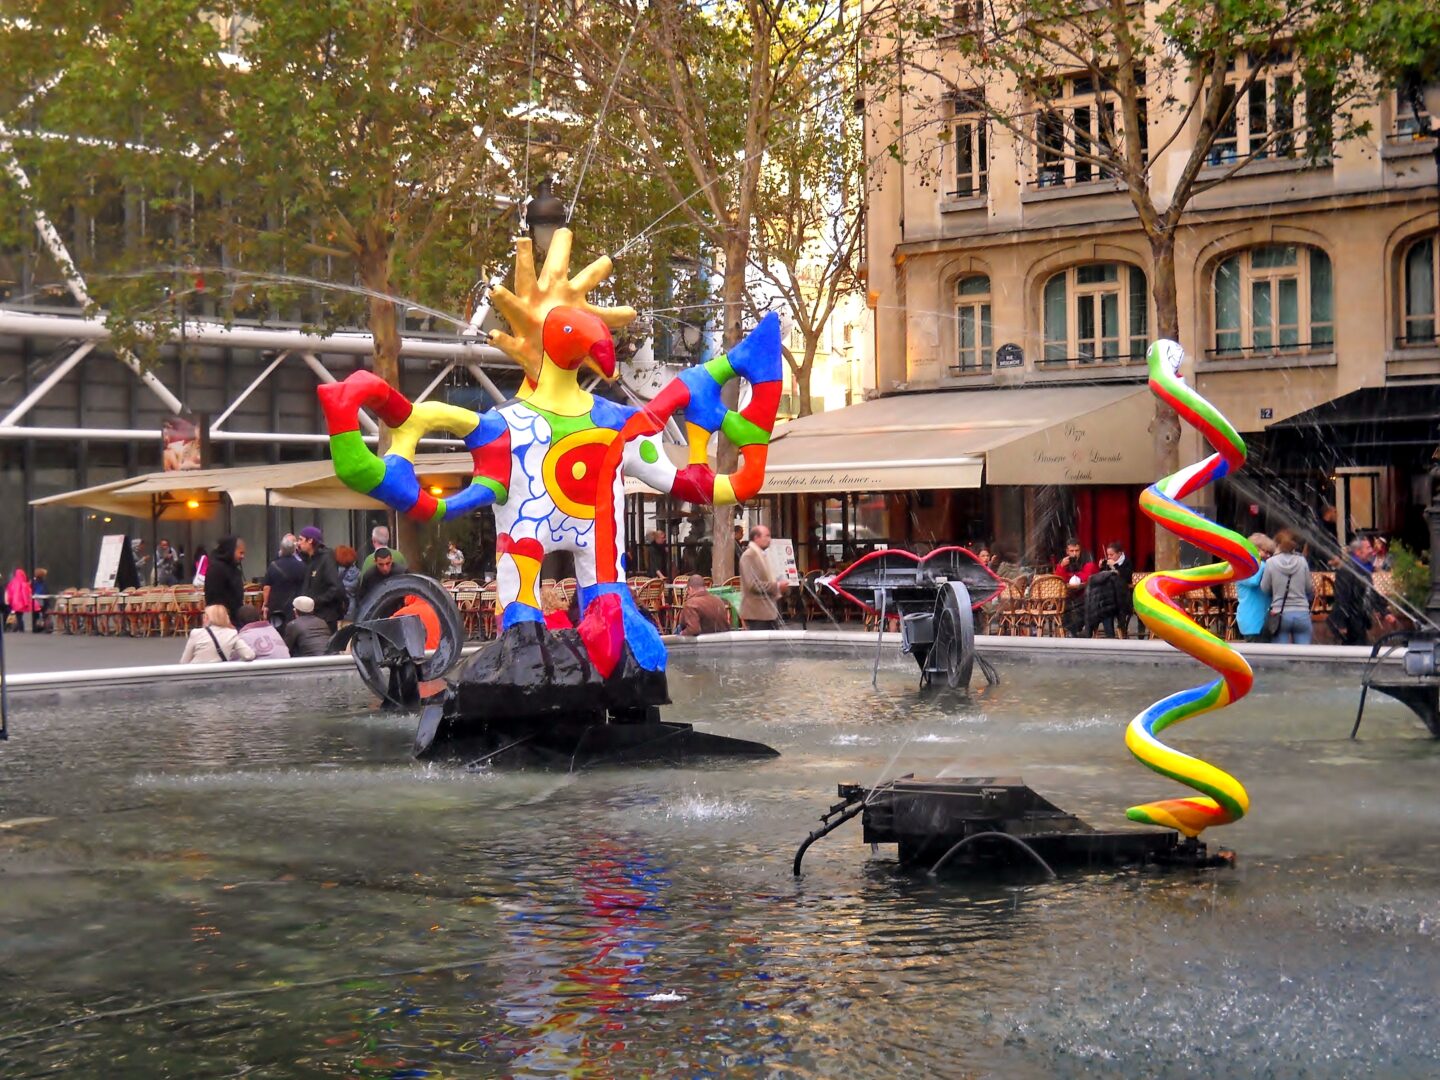 Die schießende Feministin: Niki de Saint Phalle
, paris, Brunnen neben Centre pompidou, nanas und kinetische Figuren im wasser